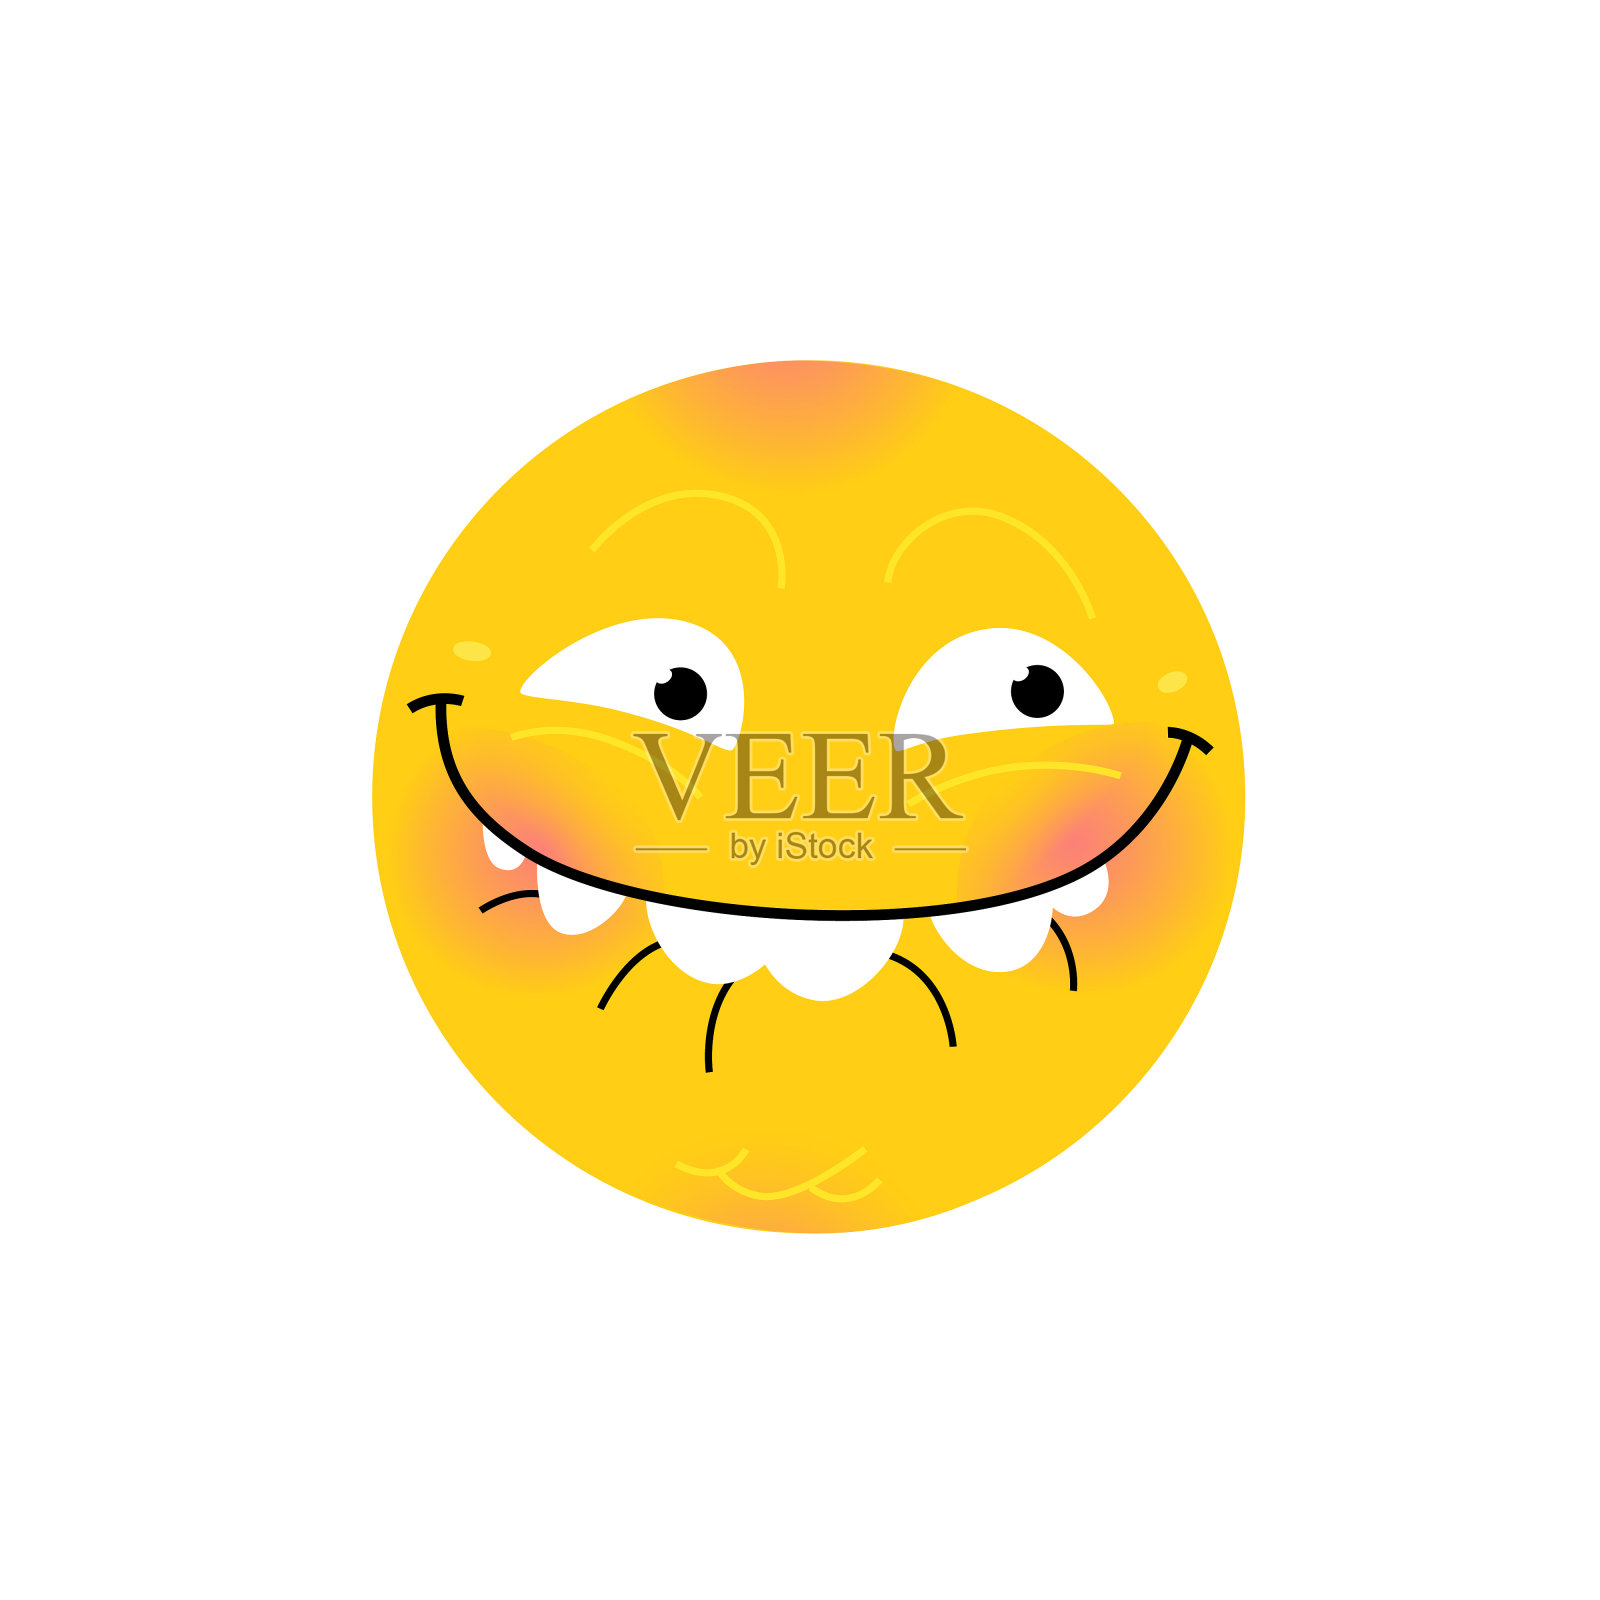 笑脸。互联网文化基因。在社交网络、聊天室、信息、手机和网络应用程序中使用表情符号。Emoji黄色的脸。象征,图标。设计元素图片